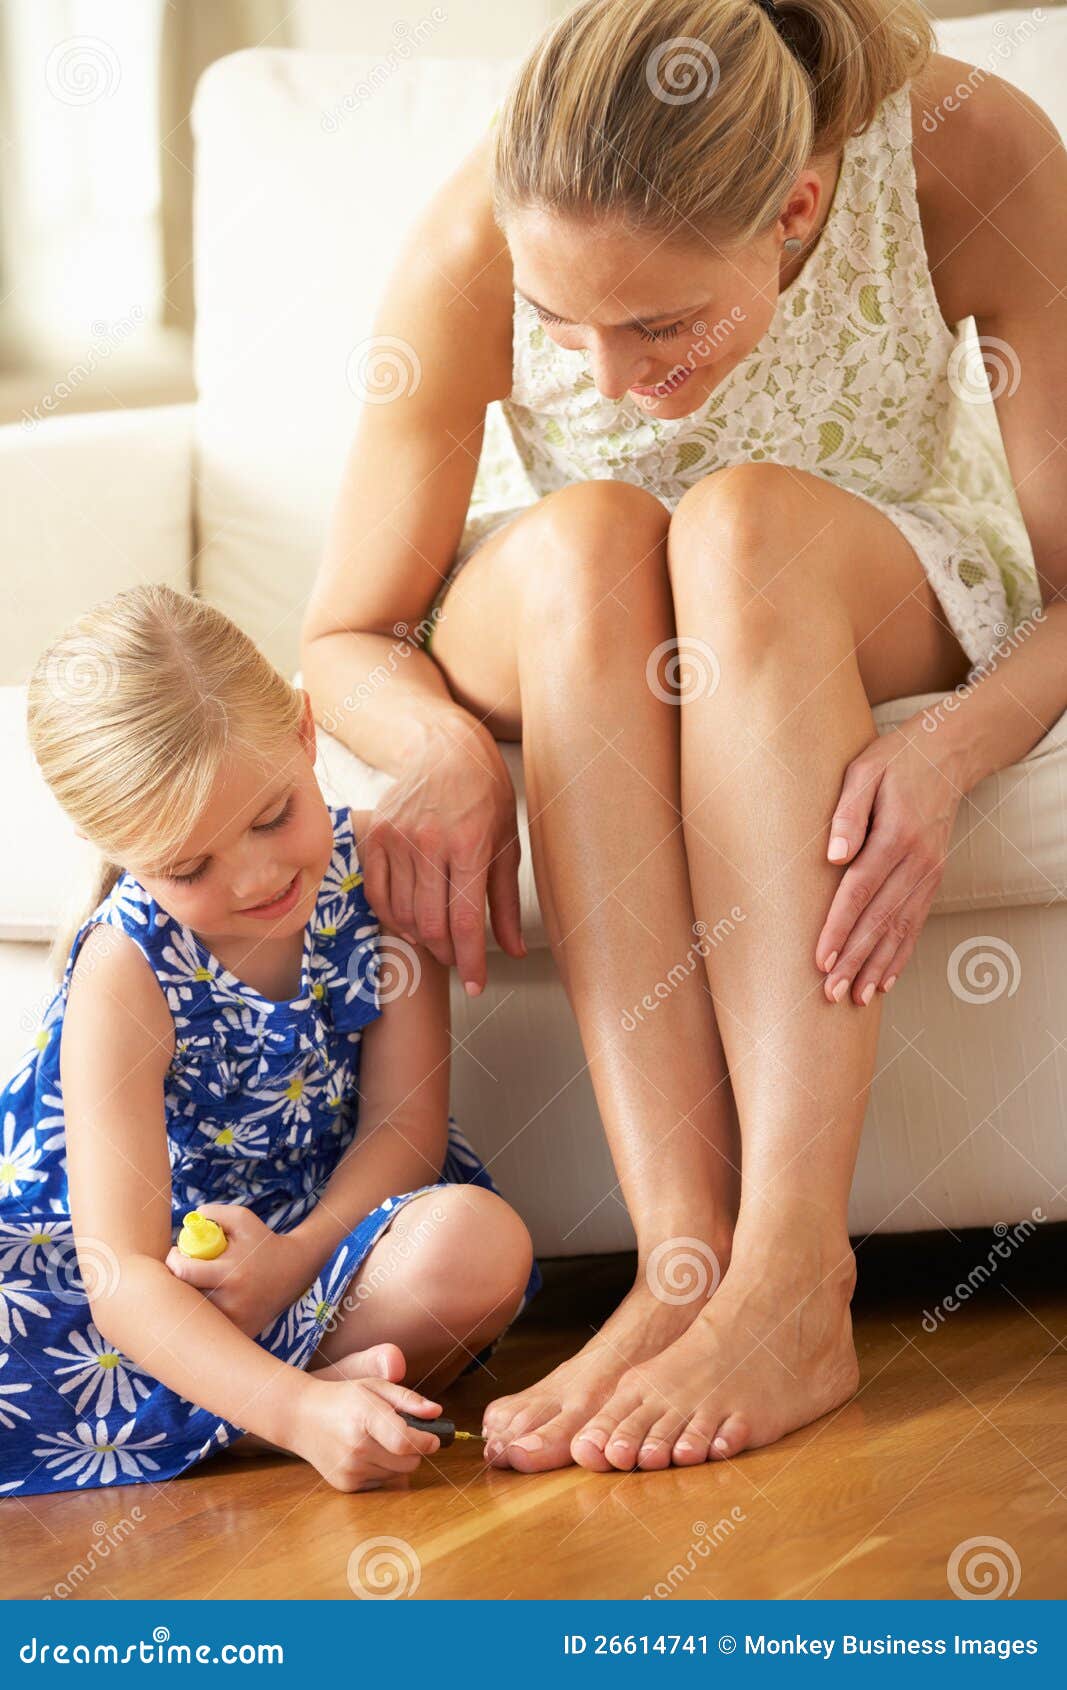 Мама ноги трусы. Детские ступни девочек облизывают. Девочка красит ногти на ногах маме. Мать и дочь ступни. Стопы детей девочек.